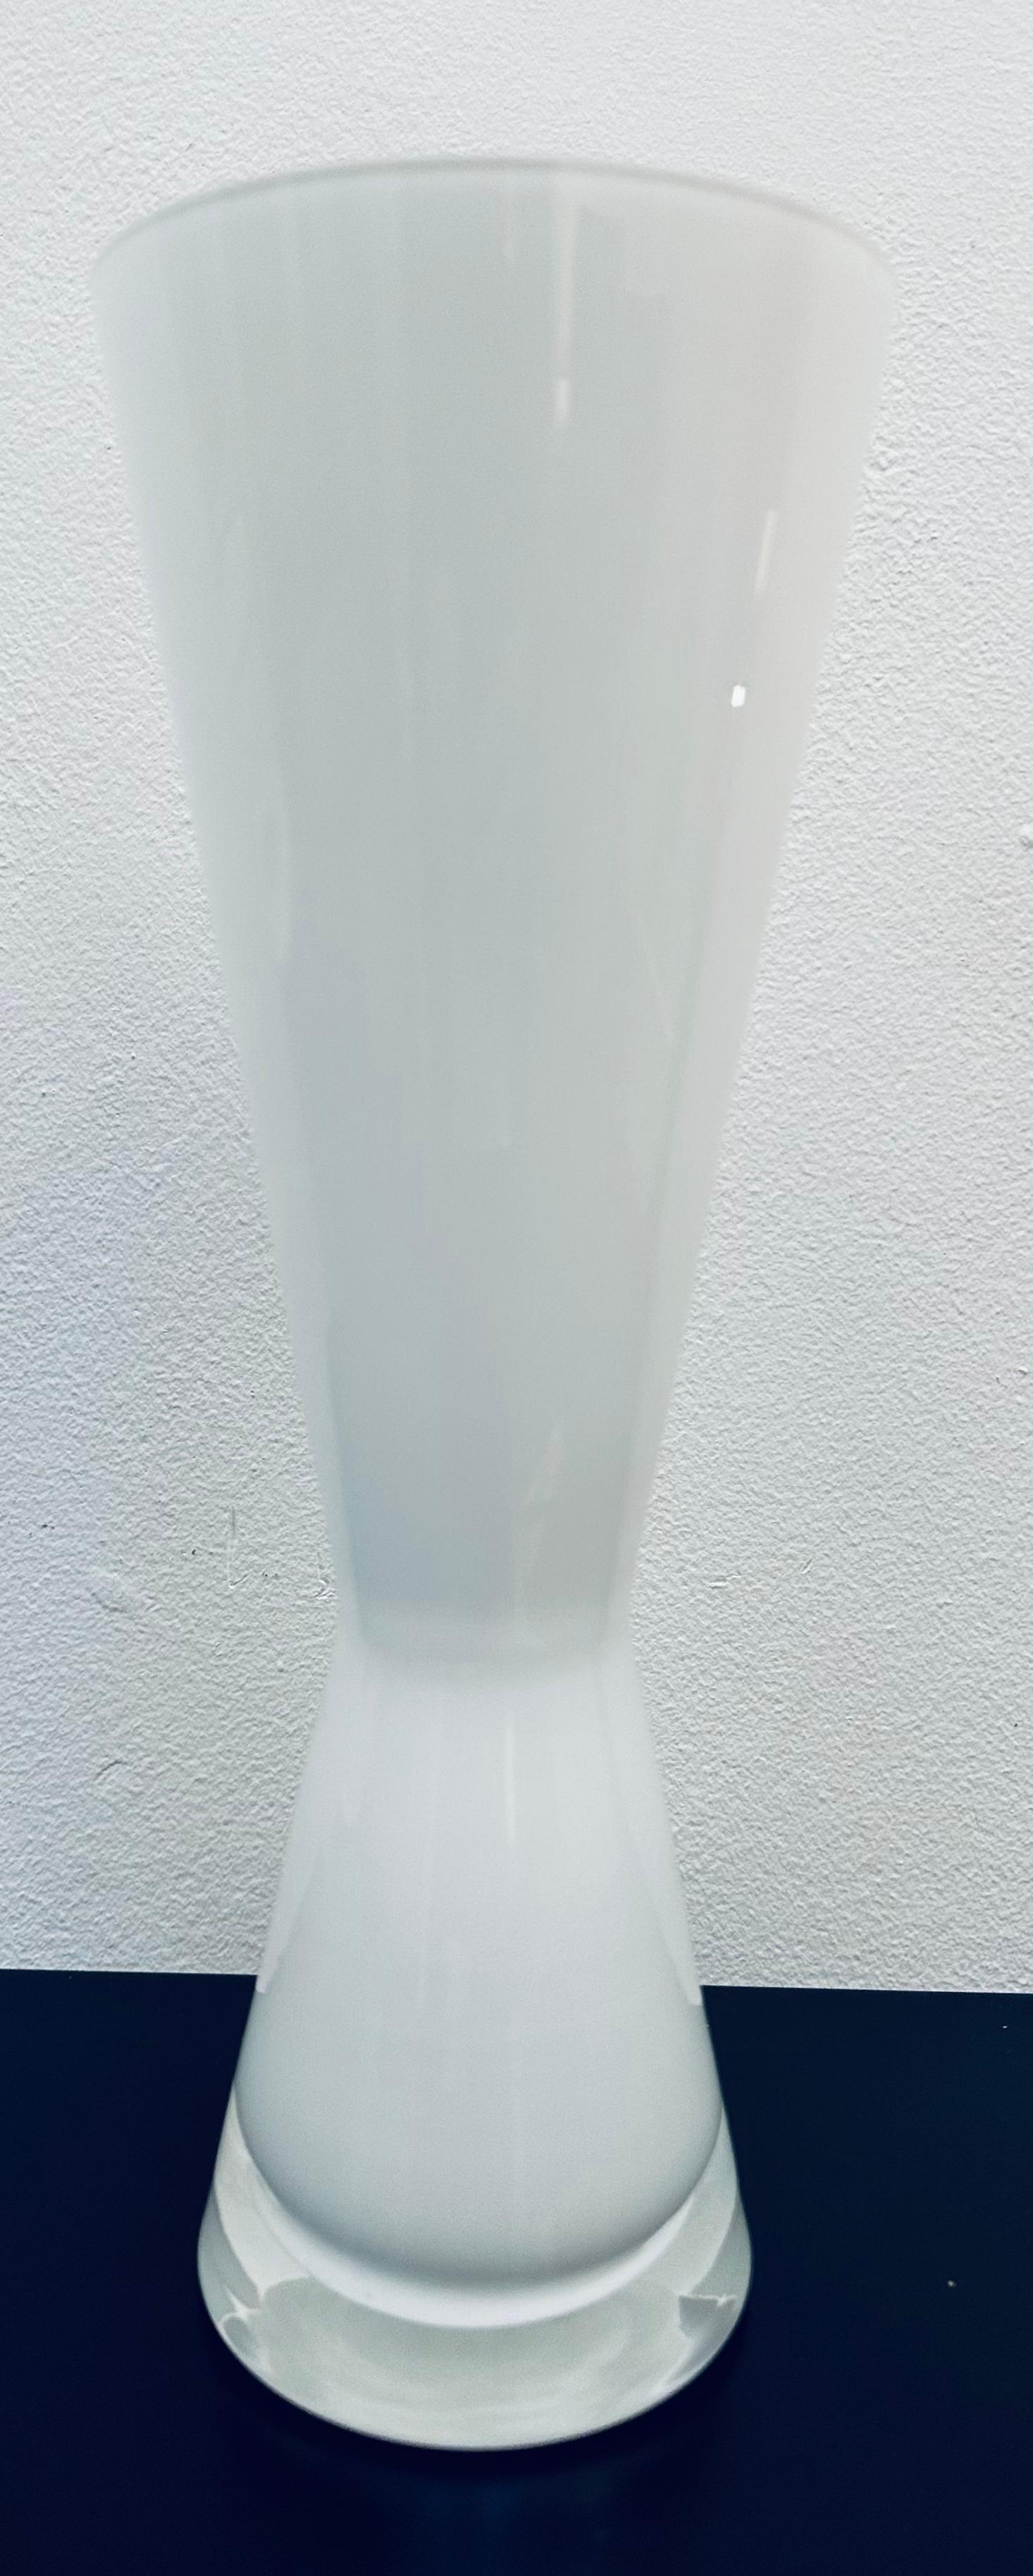 Vers les années 1960, vase en verre laiteux et transparent dans le style d'Holmegaard. Le vase est constitué de deux couches de verre : une couche intérieure de couleur lait et une couche extérieure transparente avec une base en verre transparent de